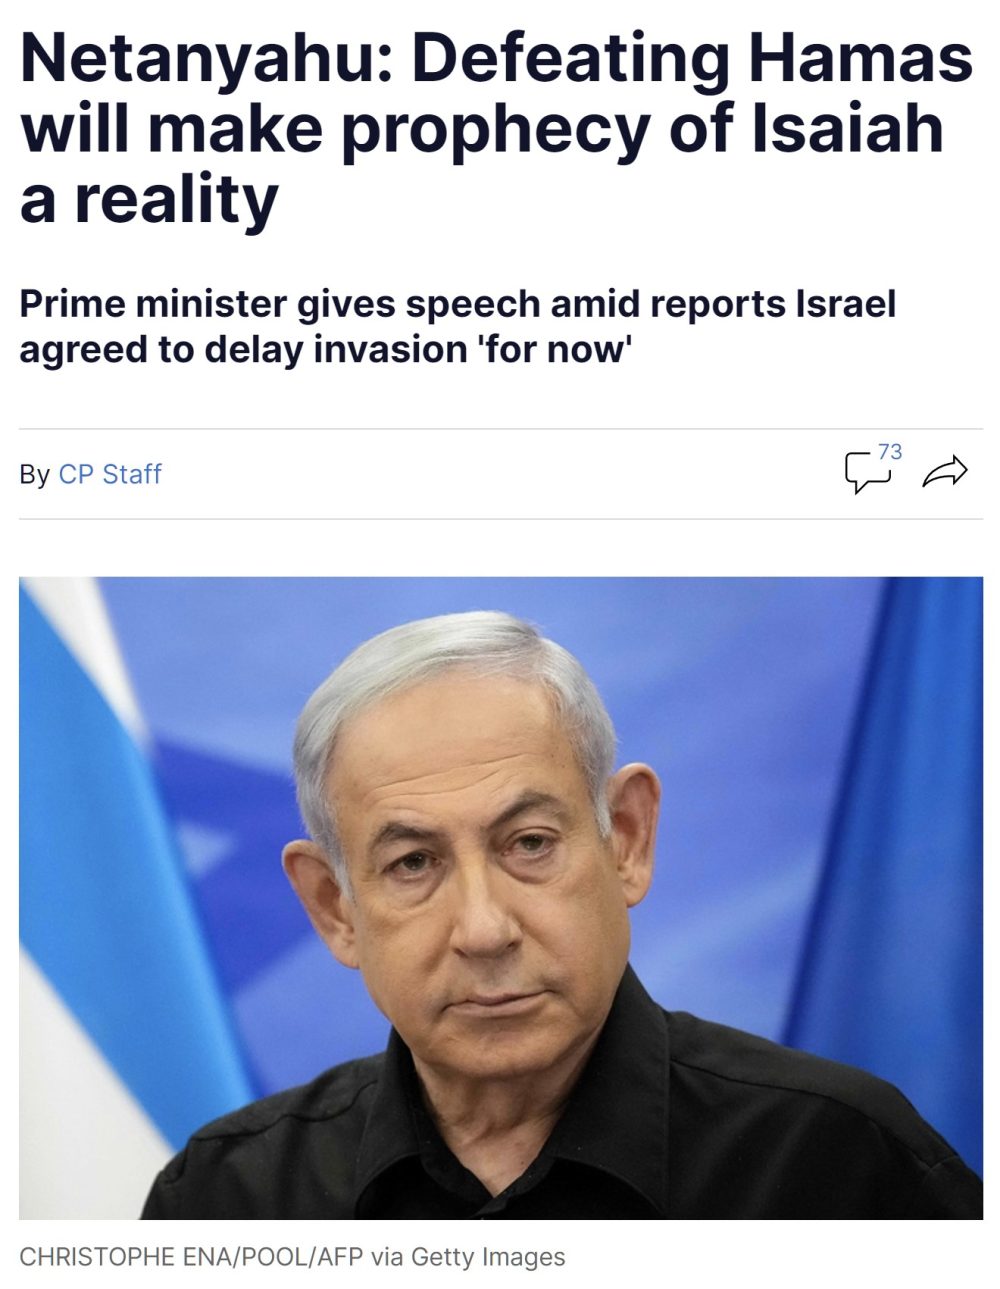 Netanyahu: "Derrotar a Hamás hará realidad la profecía de Isaías"